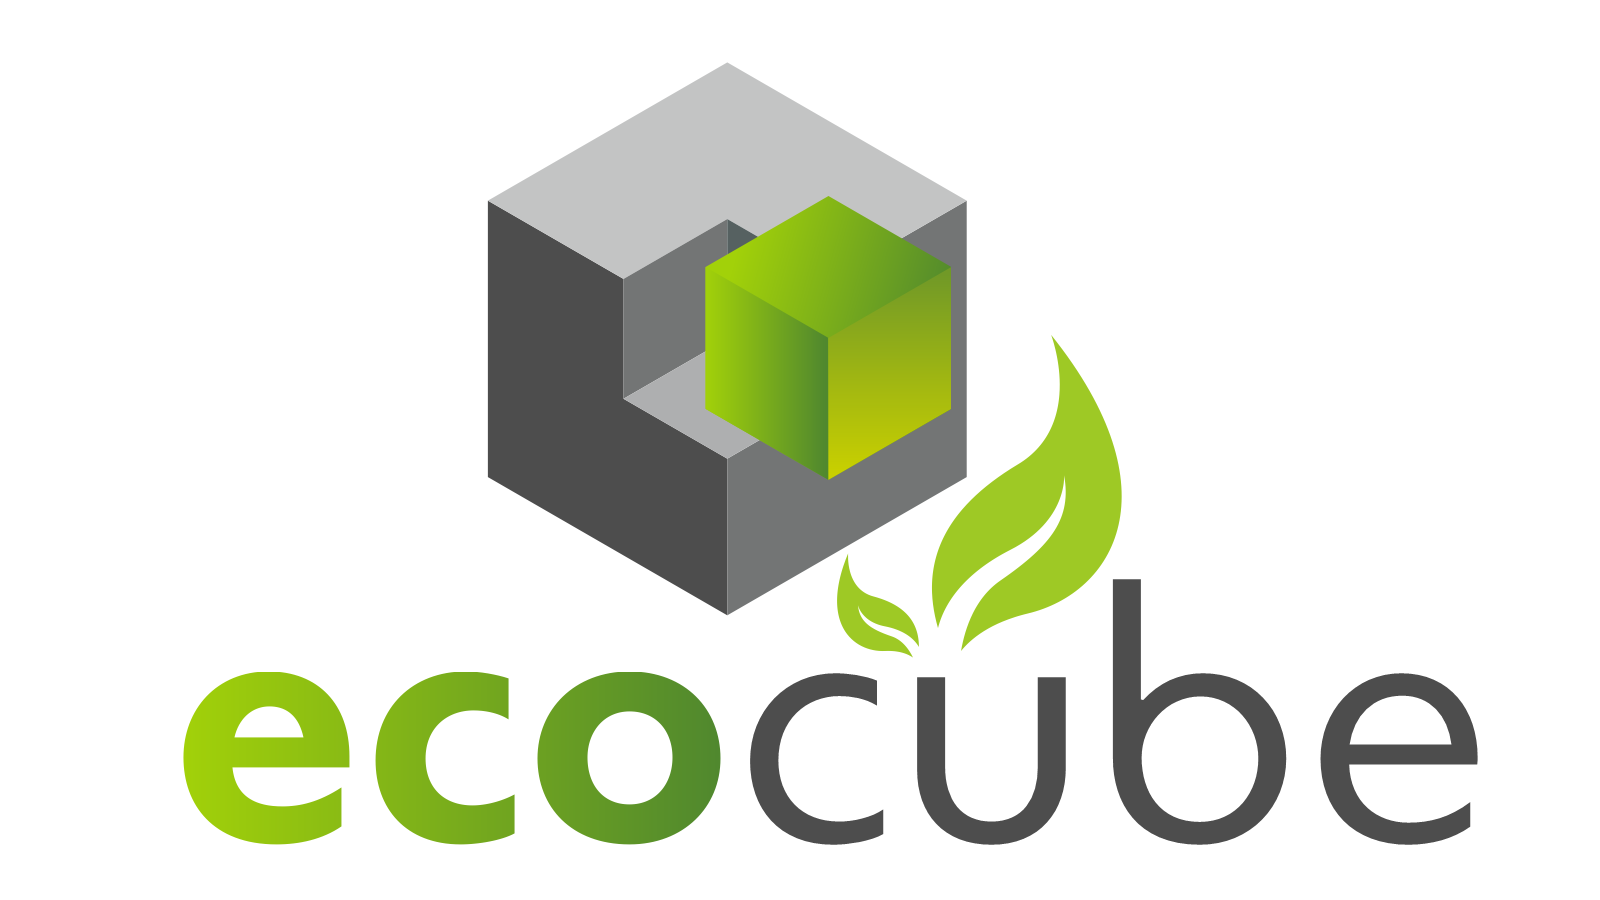 Ecocube